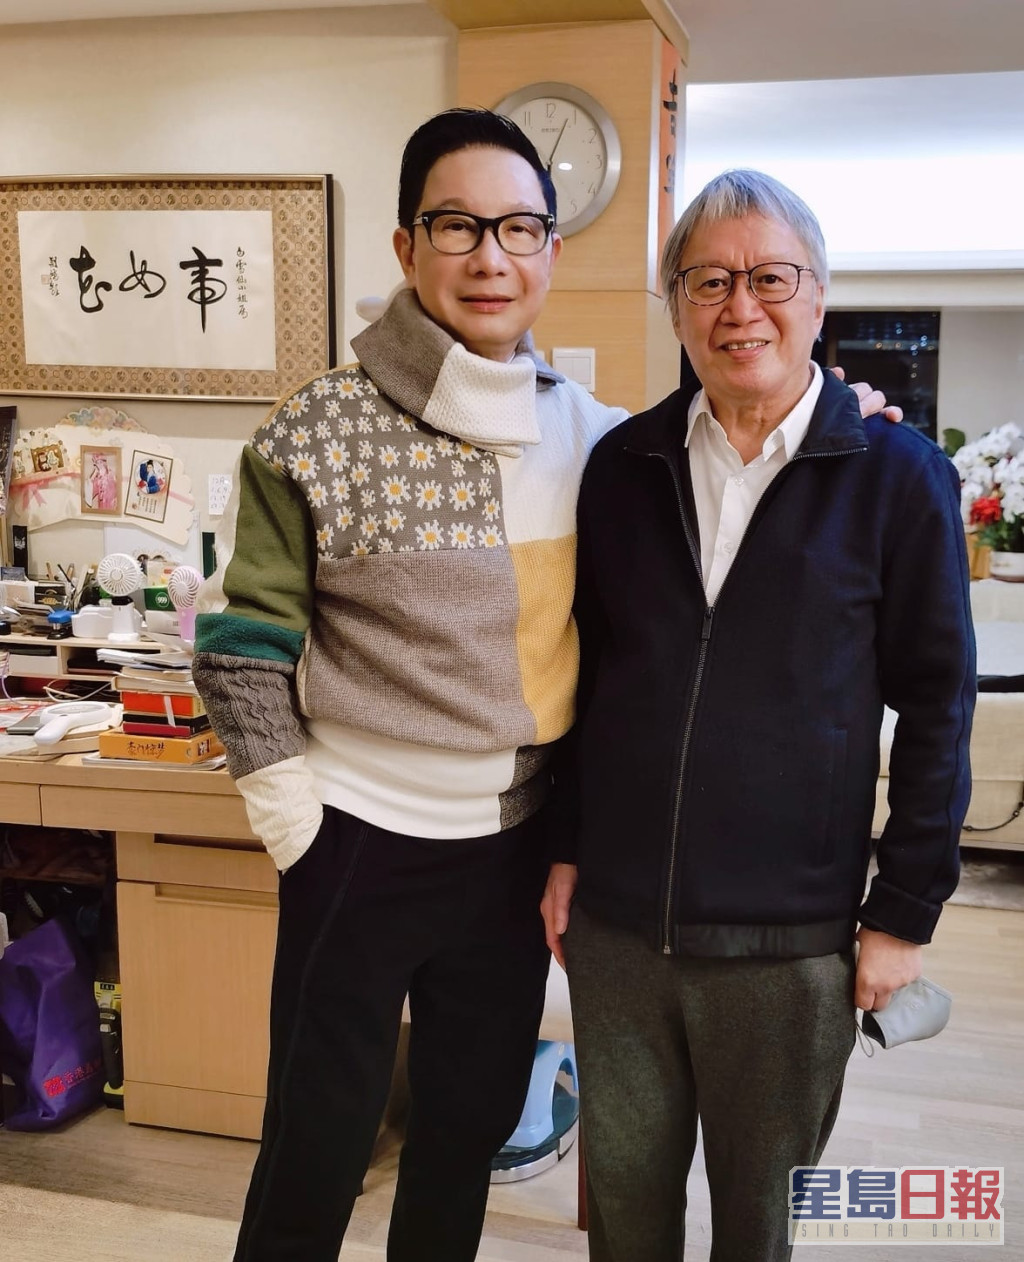 著名時裝及形象設計師劉培基於facebook分享多張於白雪仙家中拍的照片。